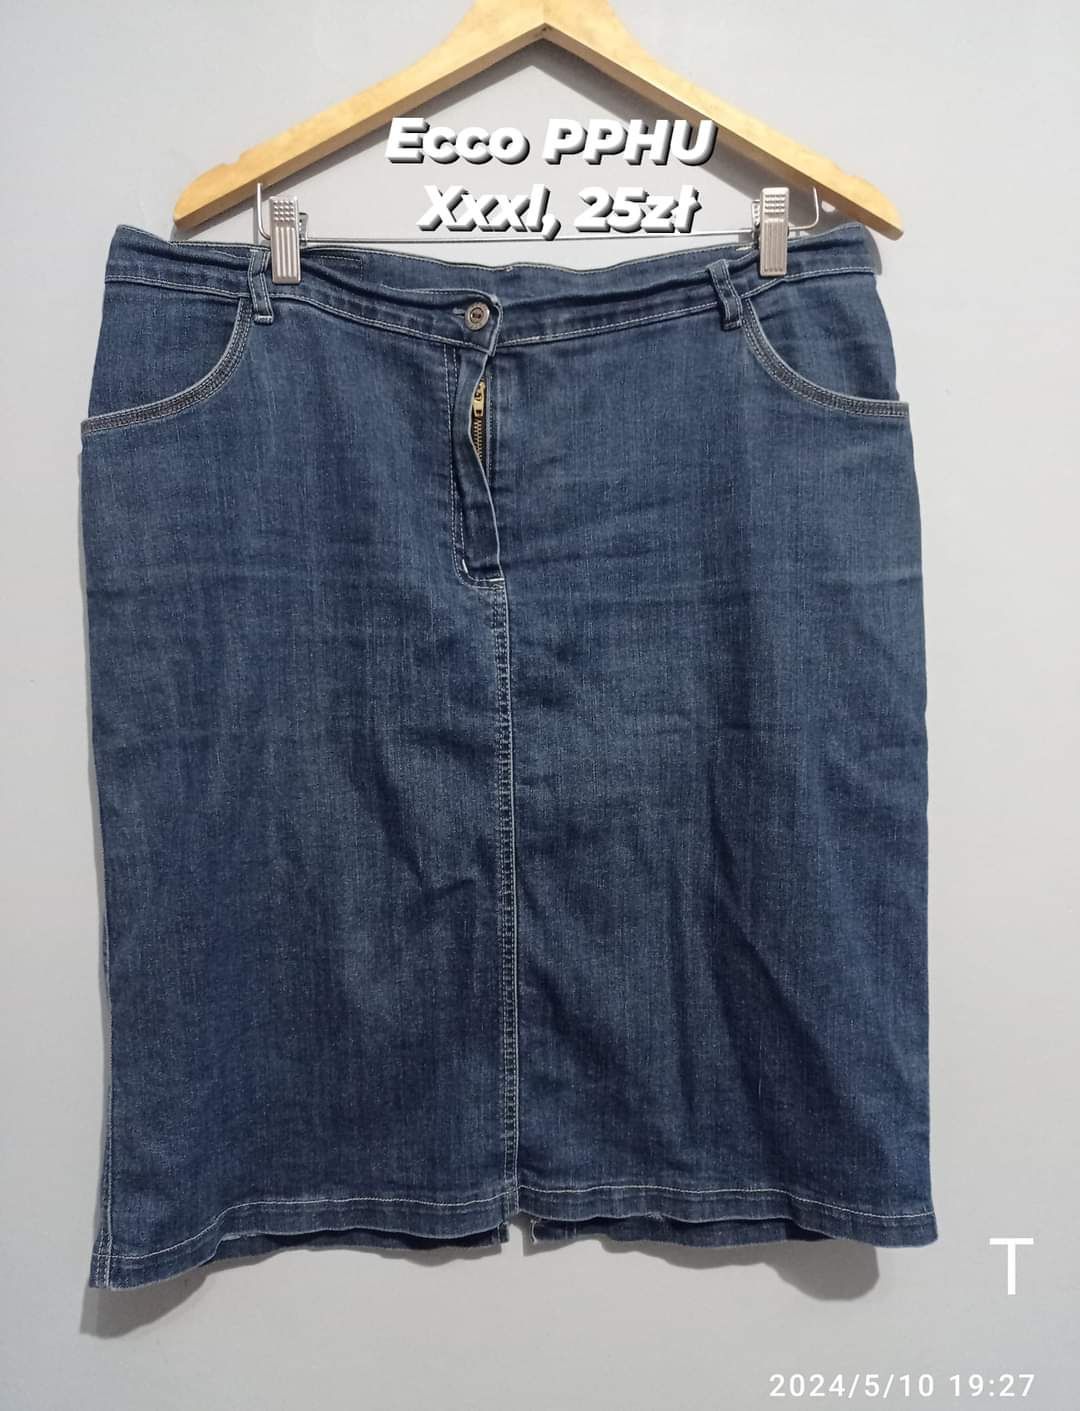 Spódnica 18 xxxl 46 jeansowa pod kolano polski produkt Ecco PPHU dżins